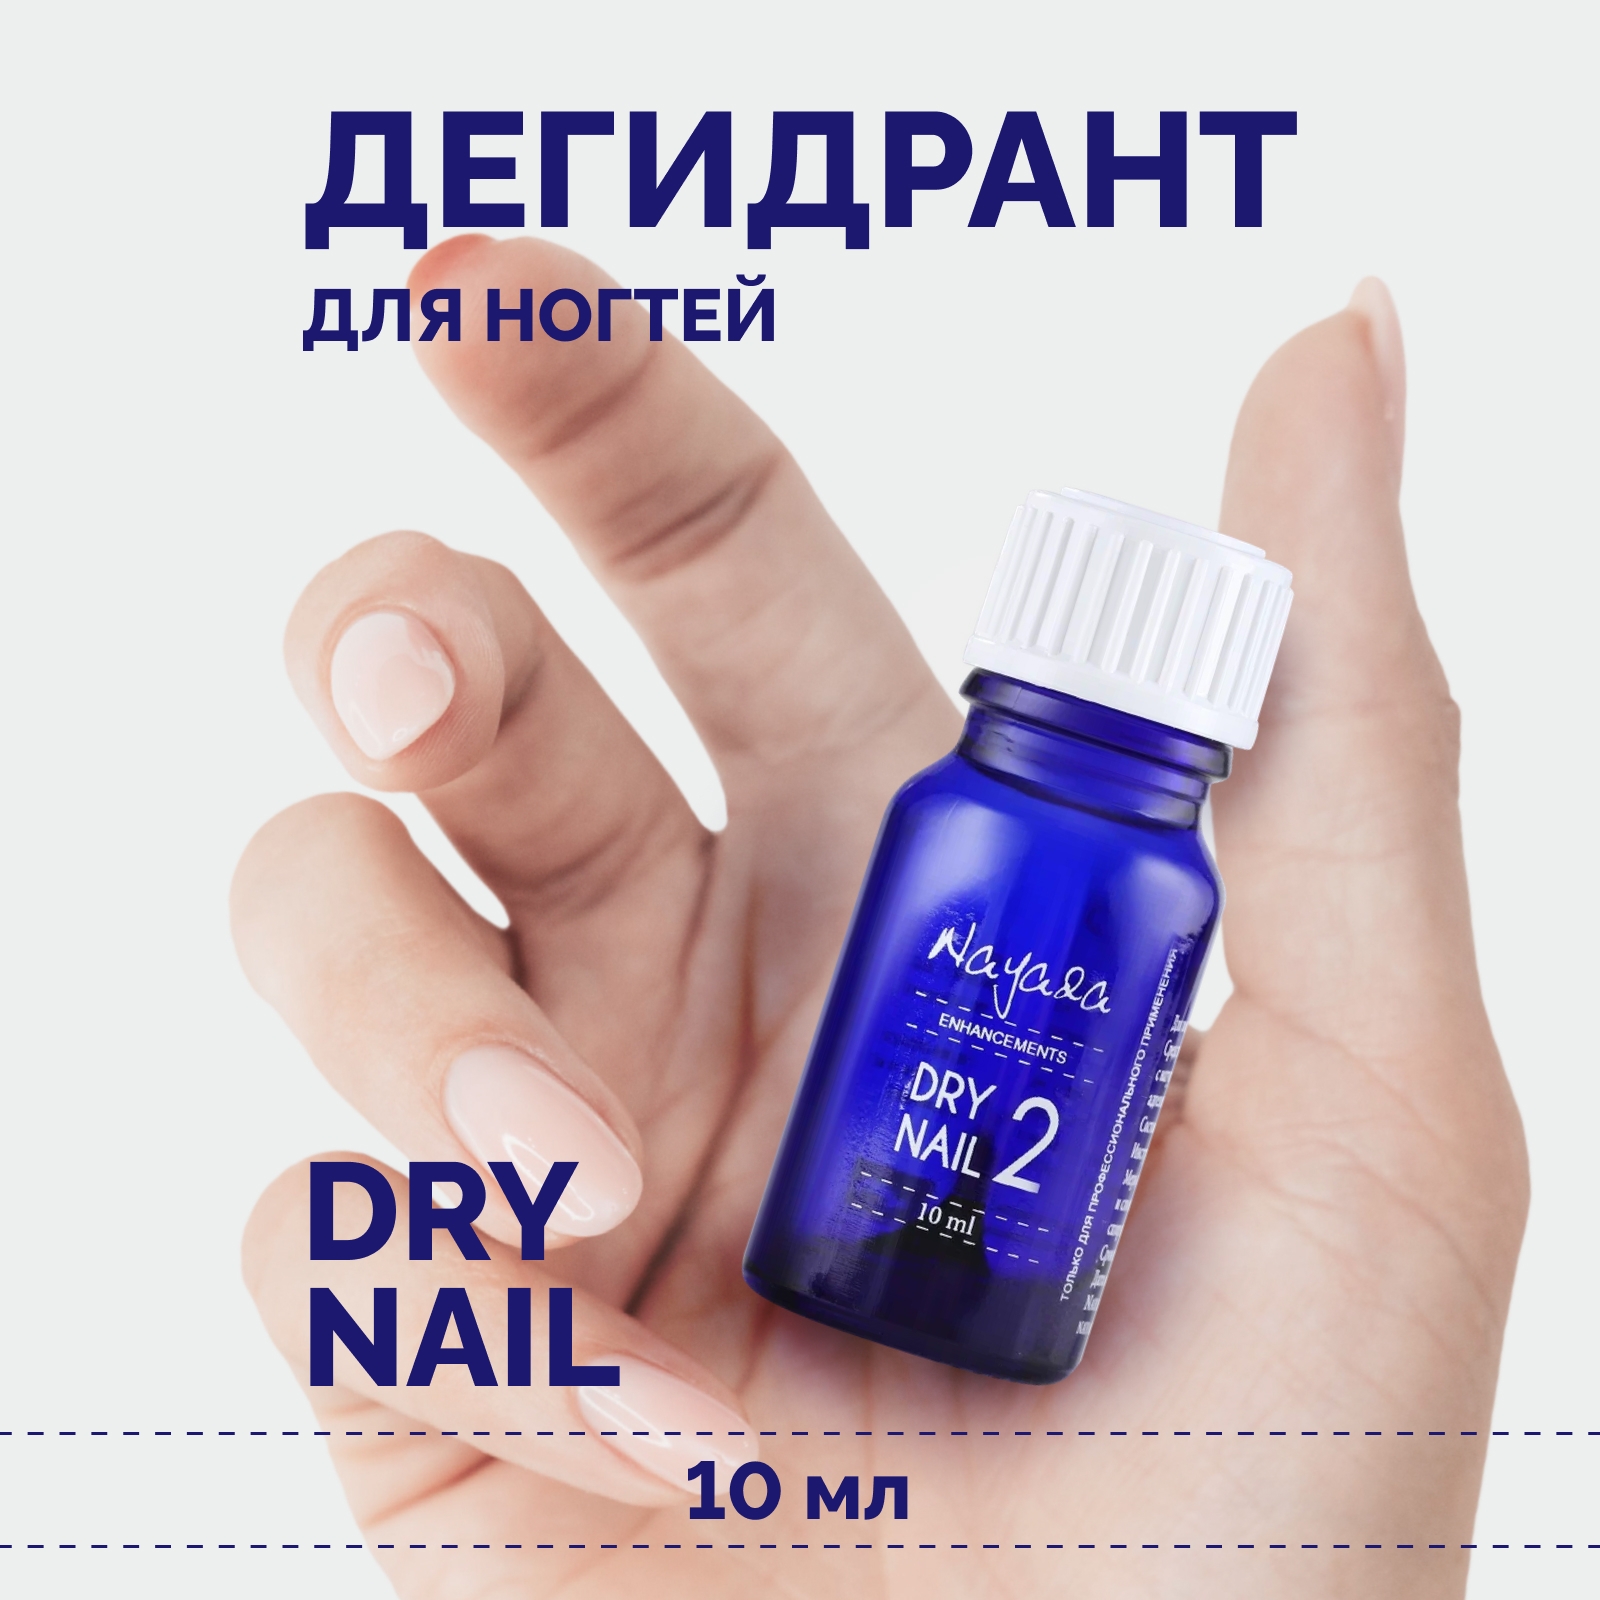 Дегидрант для ногтей Nayada Dry nail обезжириватель, 10 мл обезжириватель 1 л нхп ту